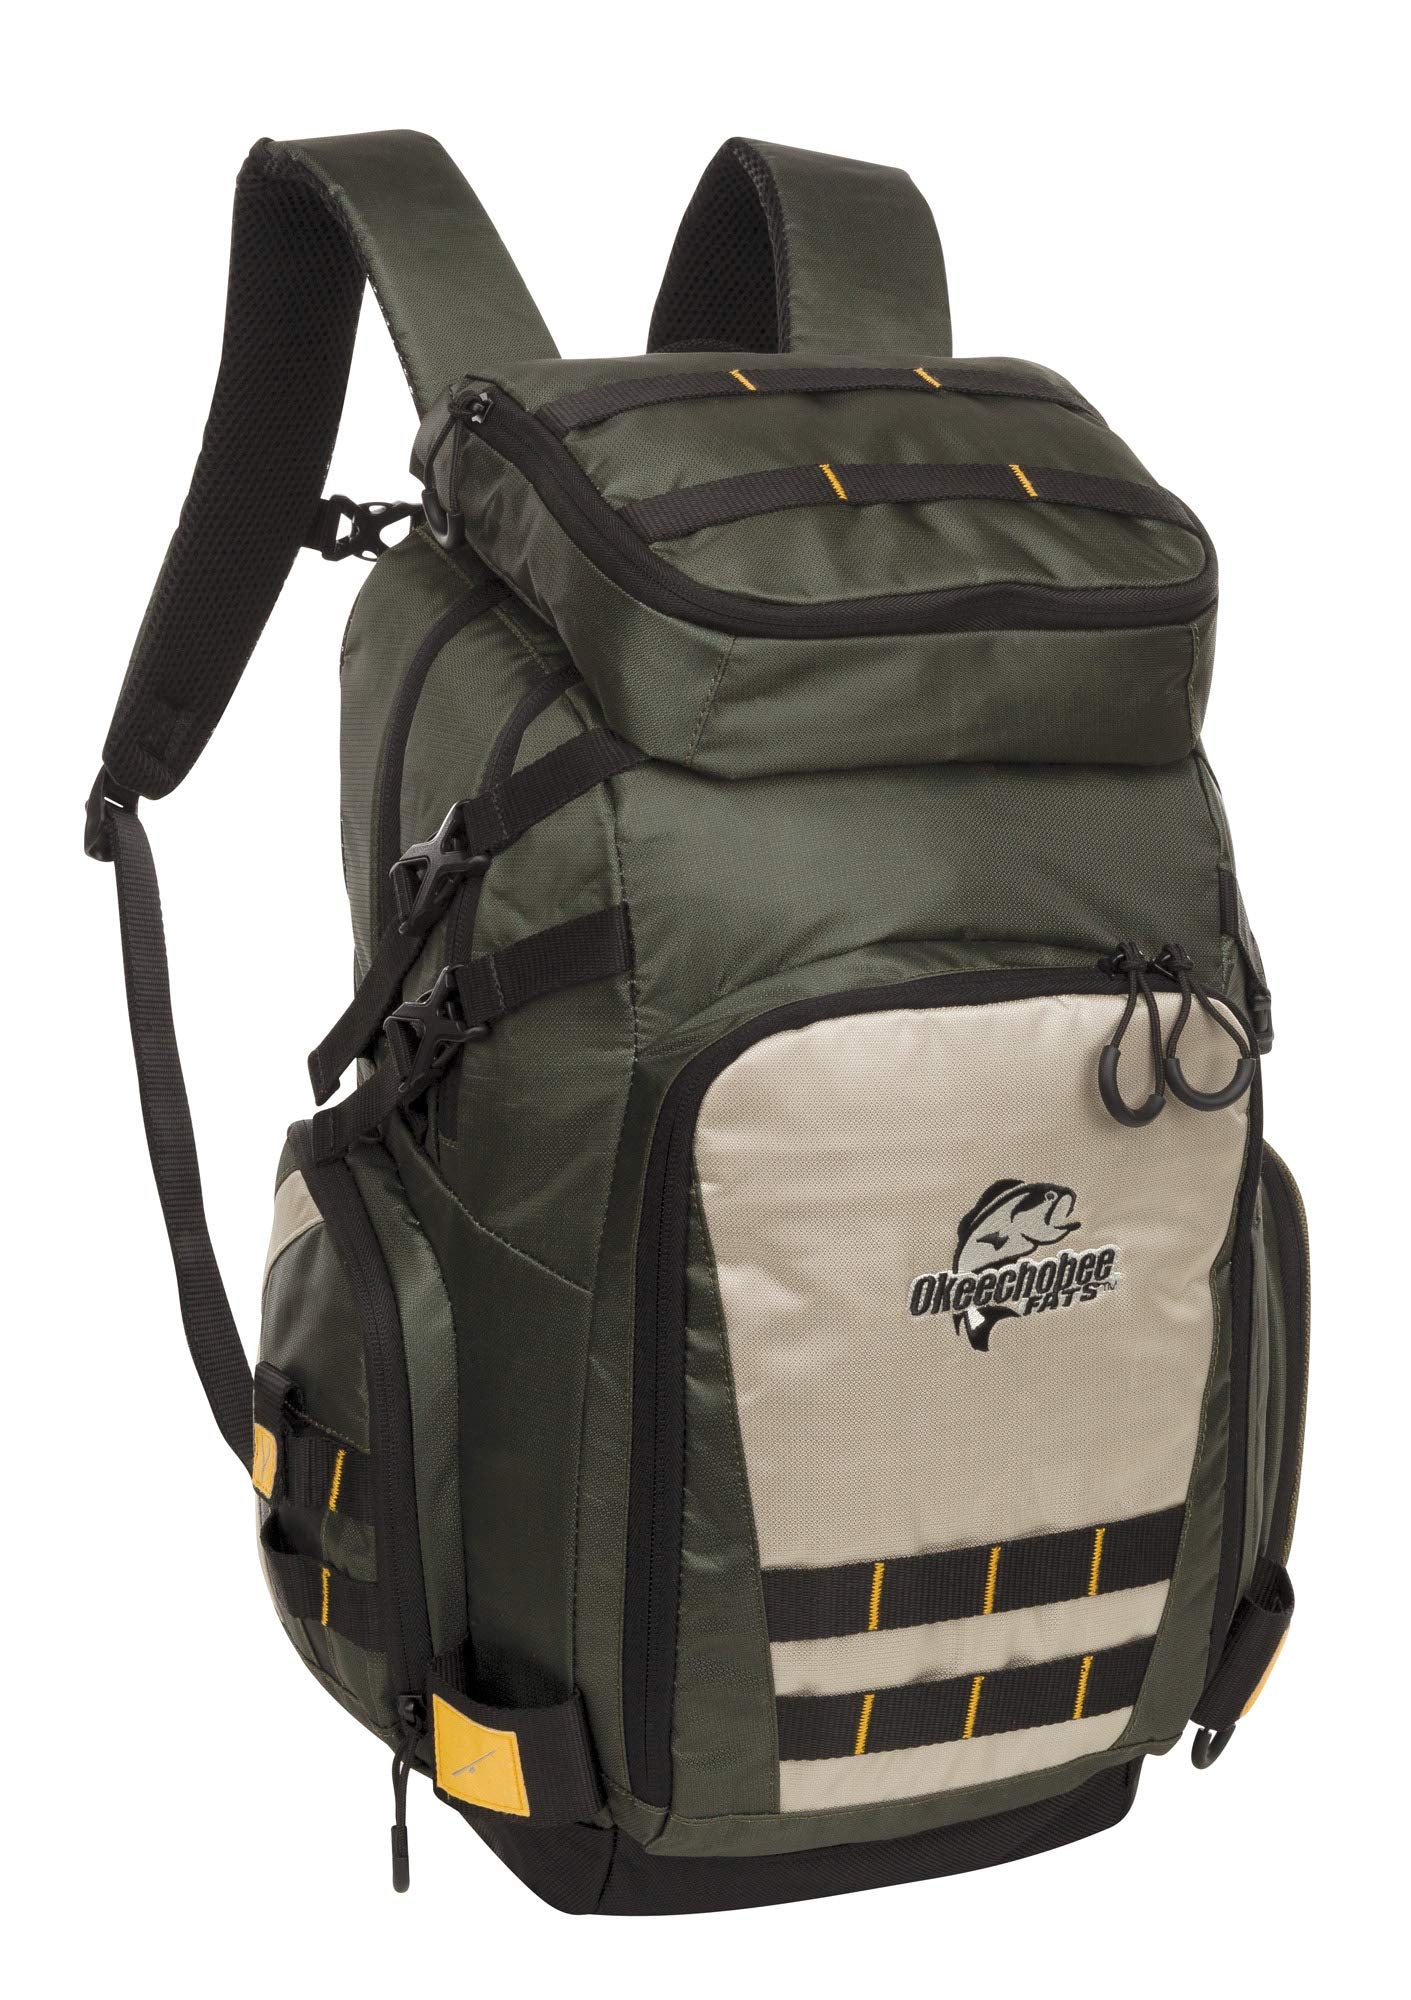 Best Fishing Backpack For Organized Angler